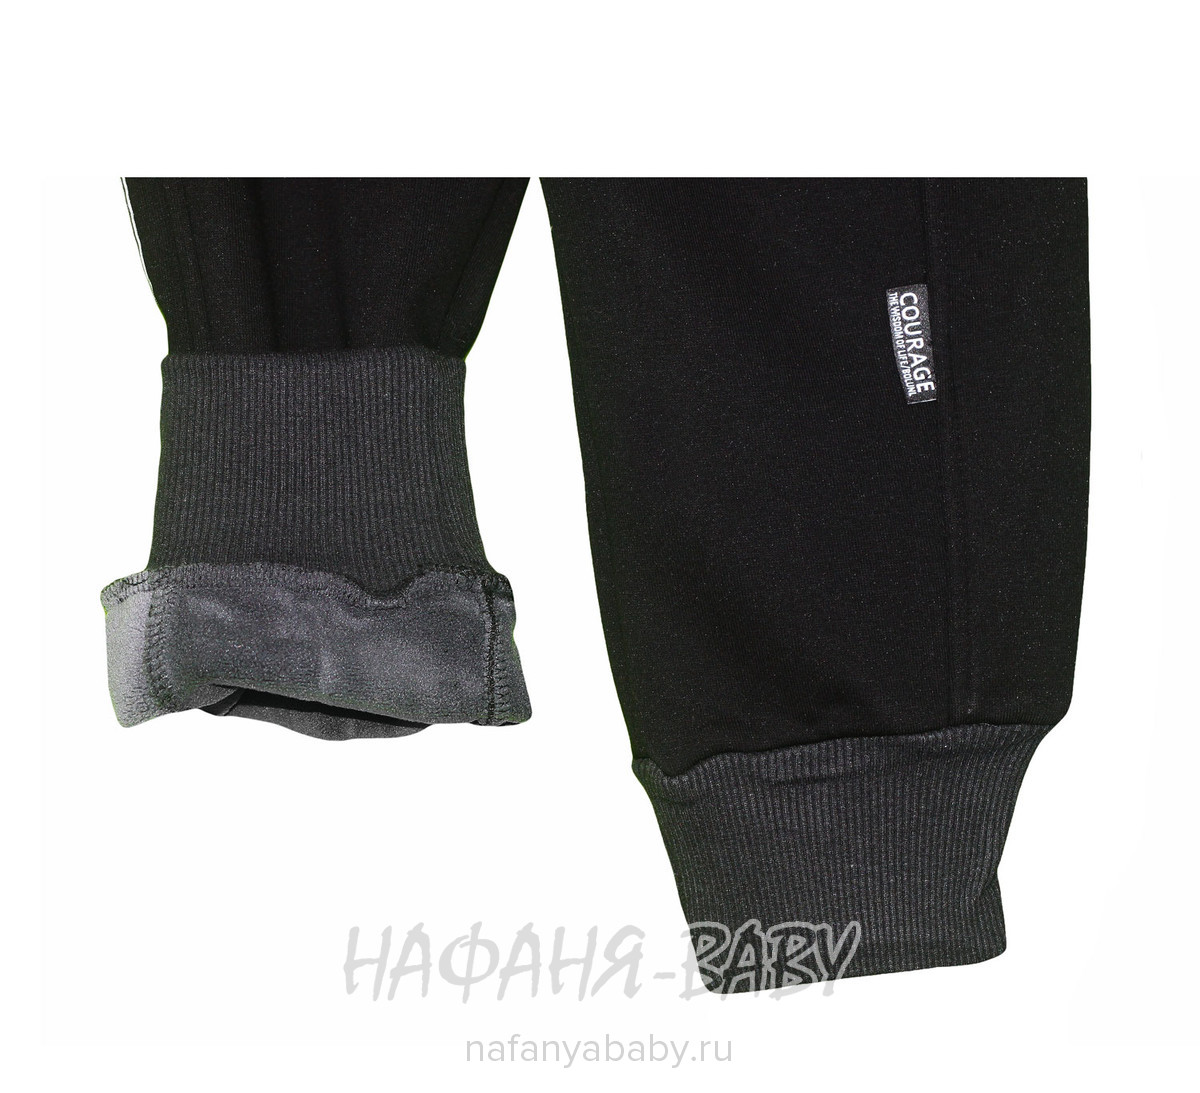 Зимние брюки на флисе XING, купить в интернет магазине Нафаня. арт: 010.